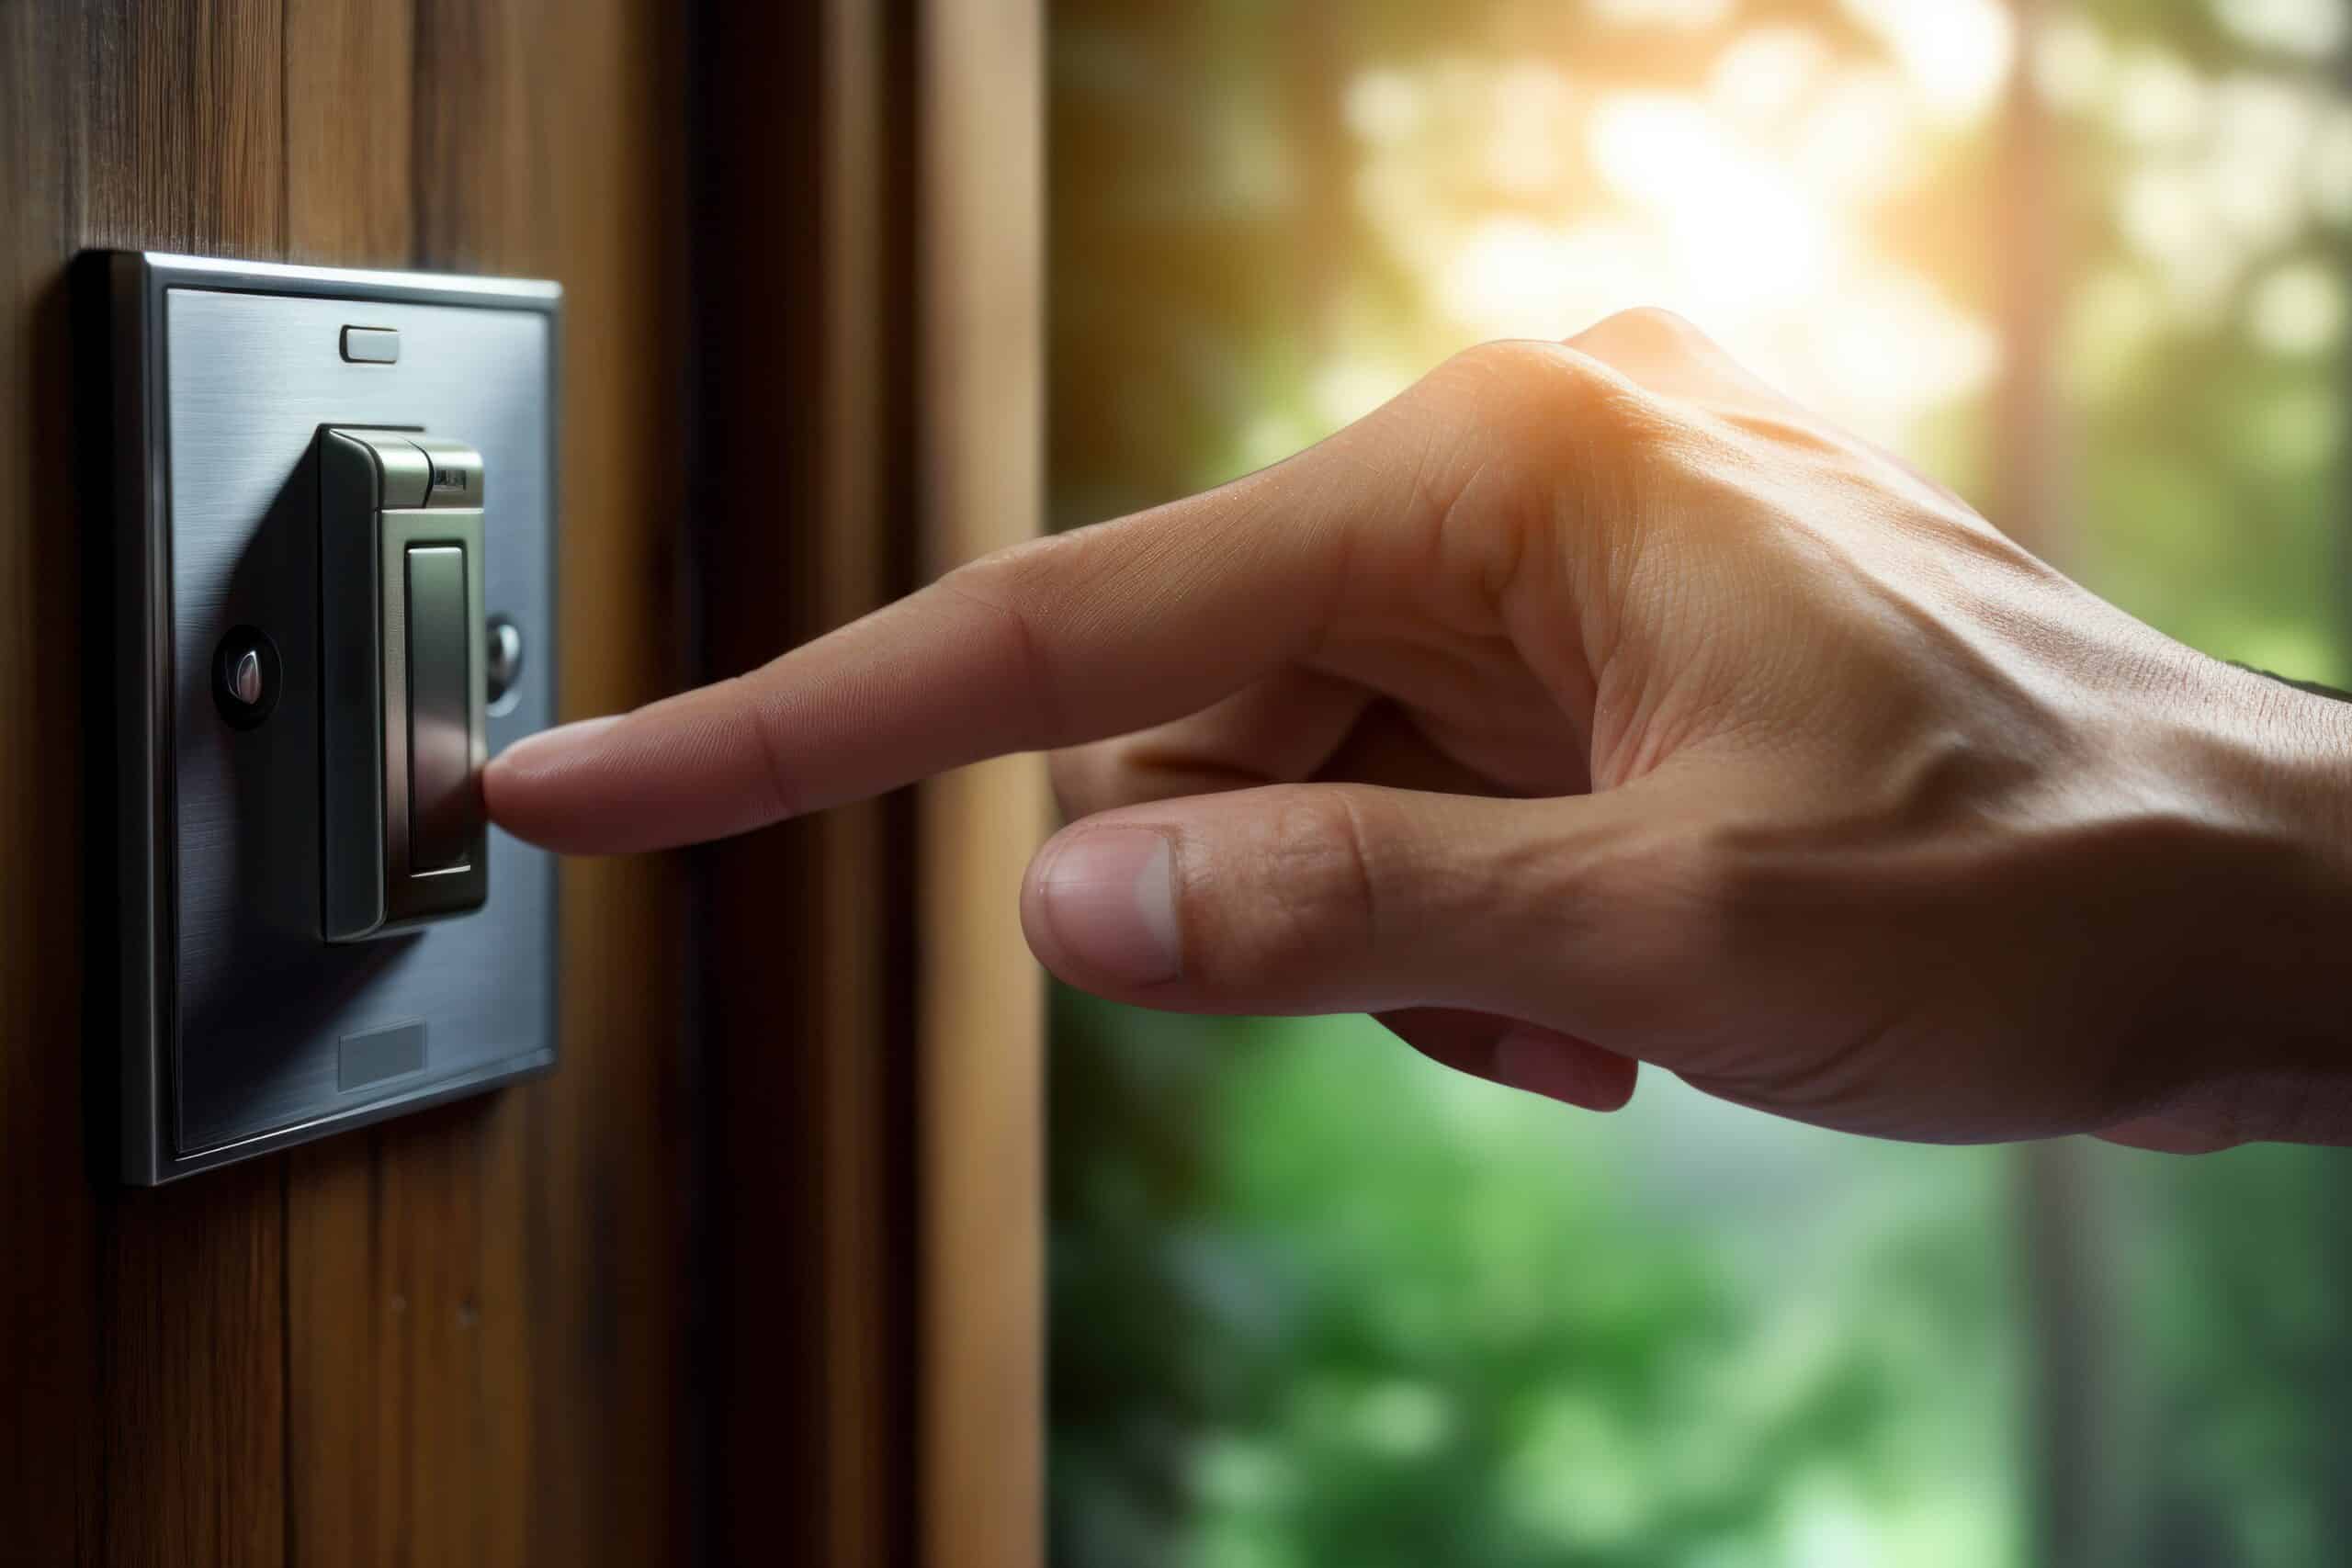 www.appr.com : Are Smart Doorbells Worth It?